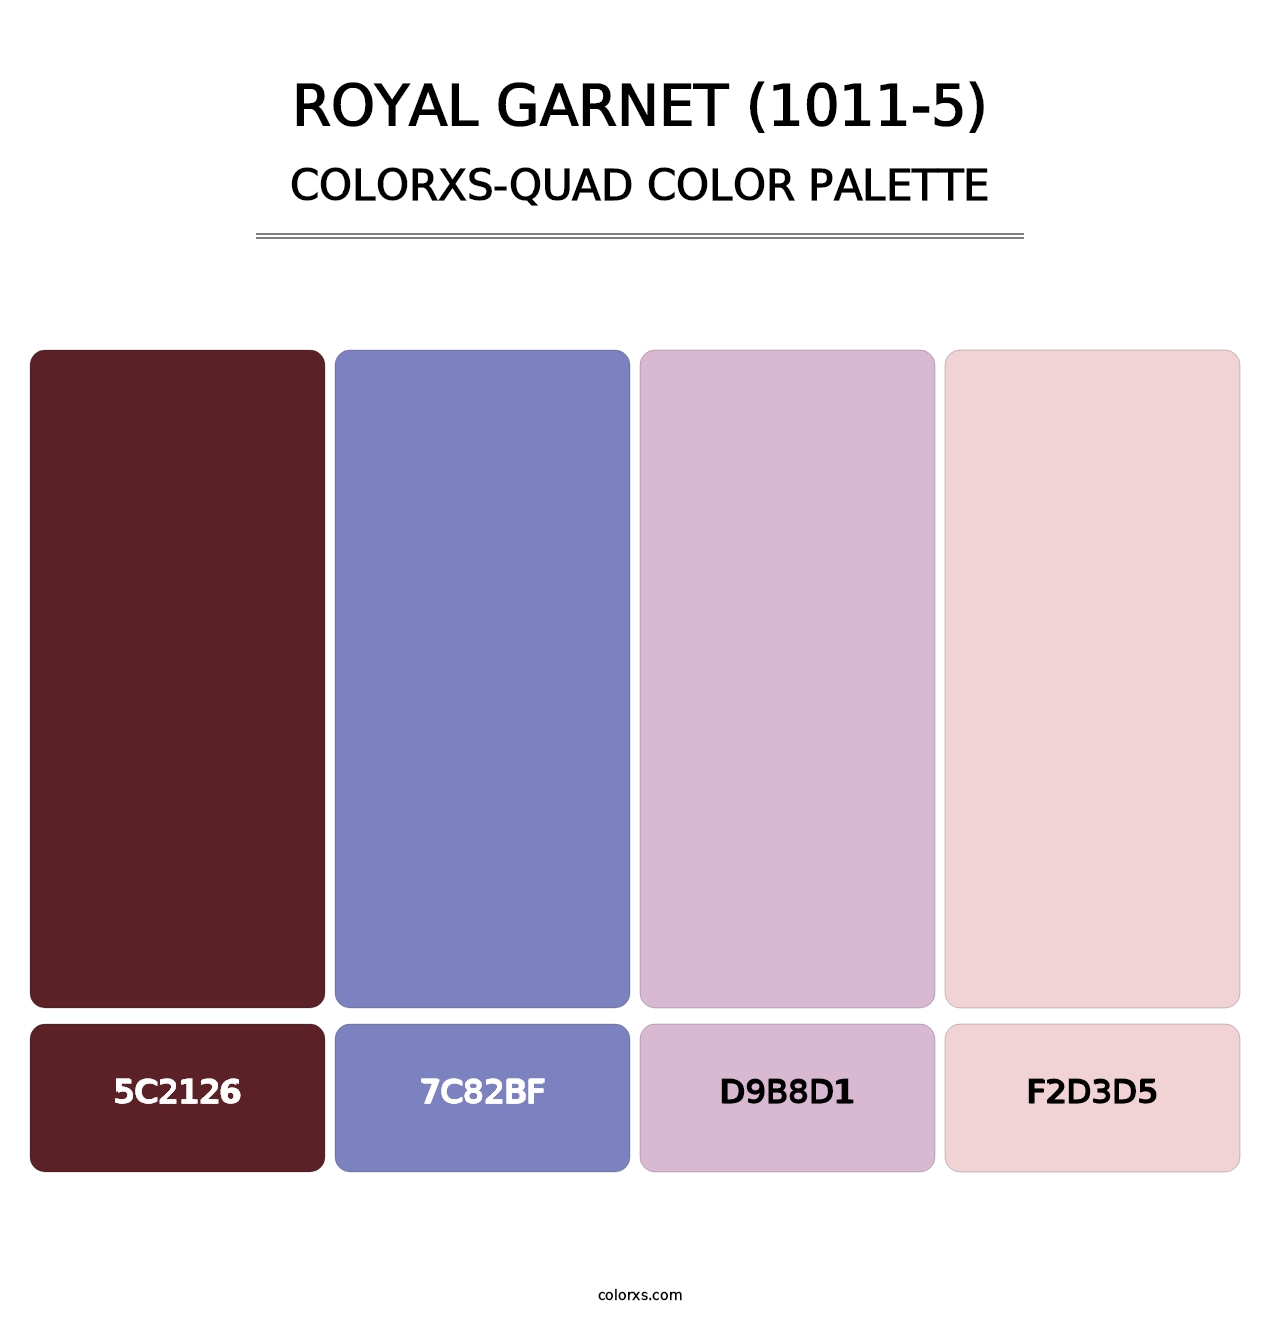 Royal Garnet (1011-5) - Colorxs Quad Palette